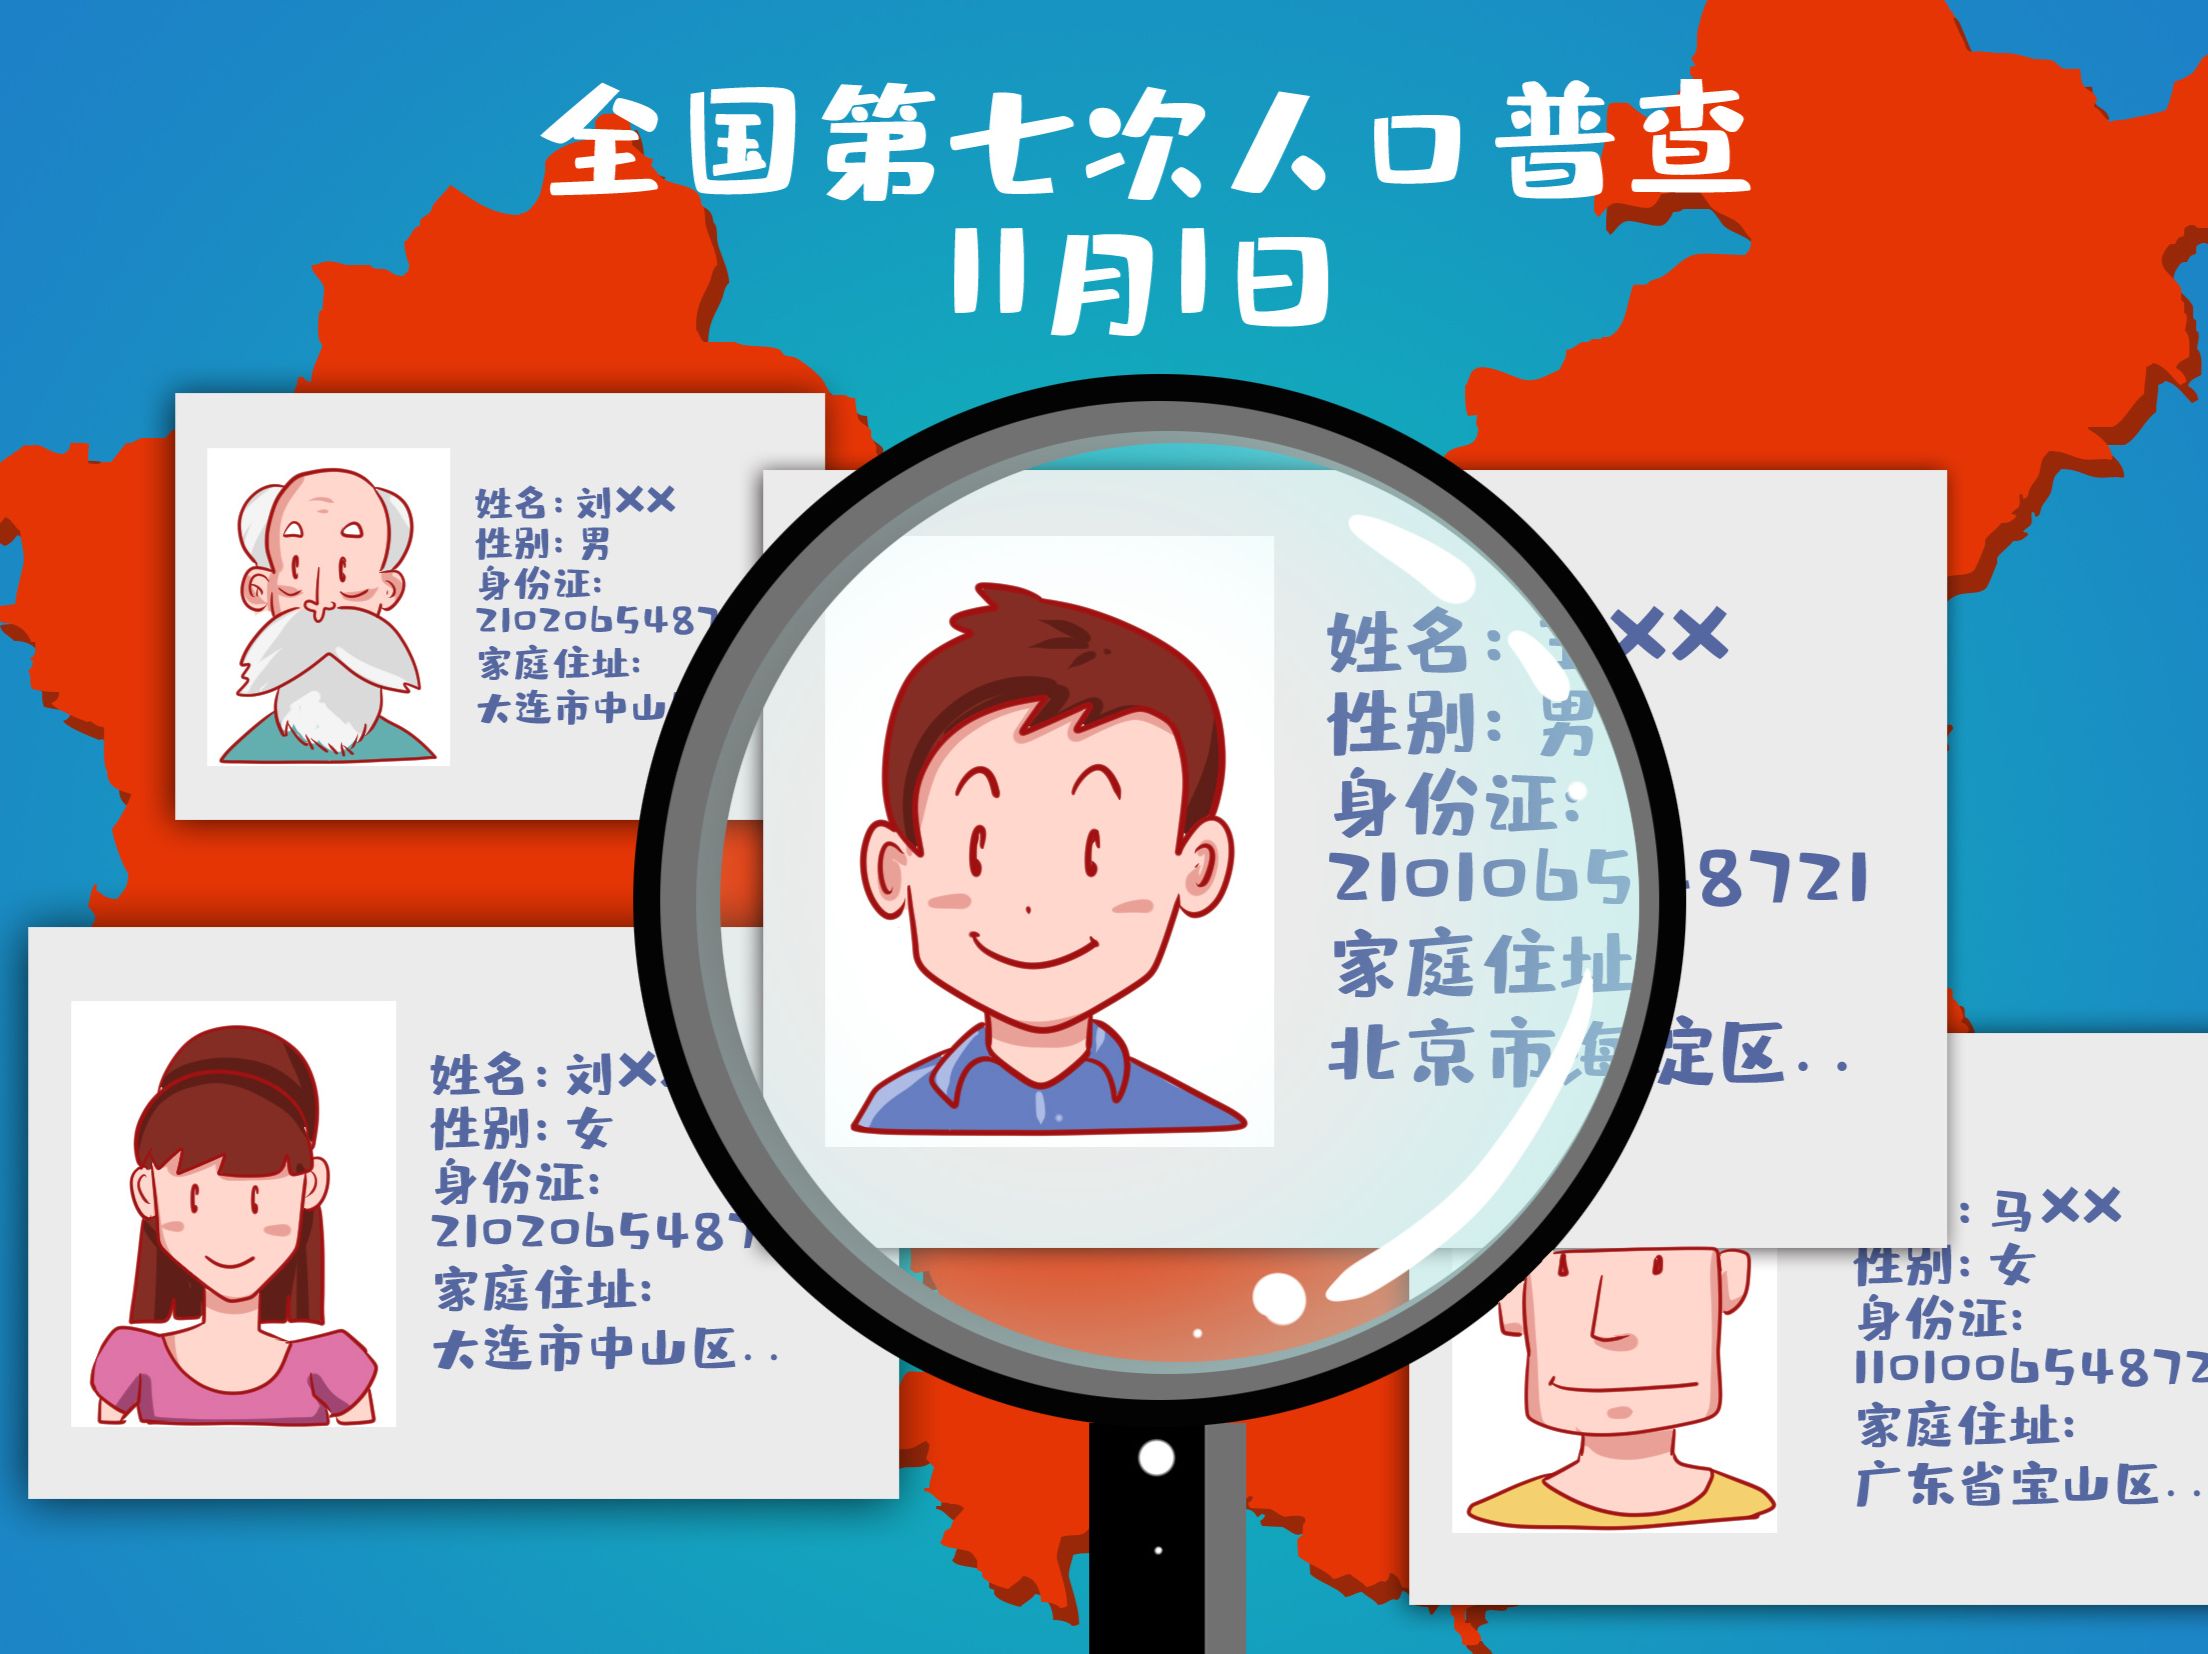 2021年广东省人口增加居首位！三四房需求增多 - 乐有家